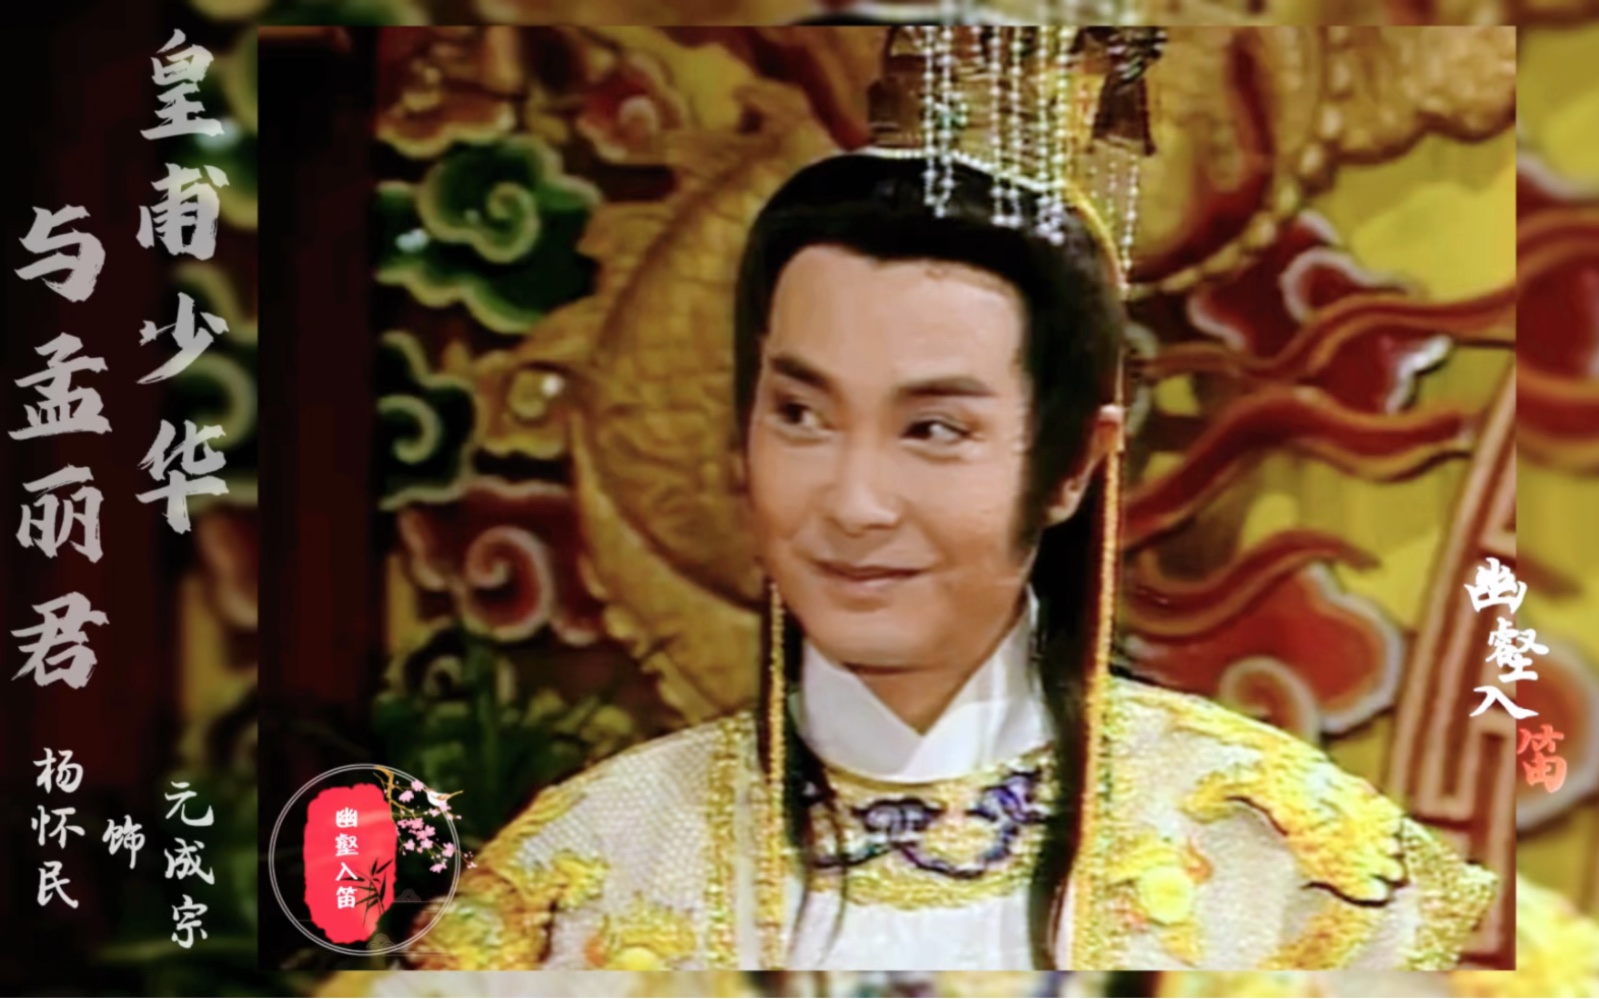 杨怀民歌仔戏《皇甫少华与孟丽君》元成宗角色剪辑,风流倜傥的皇帝